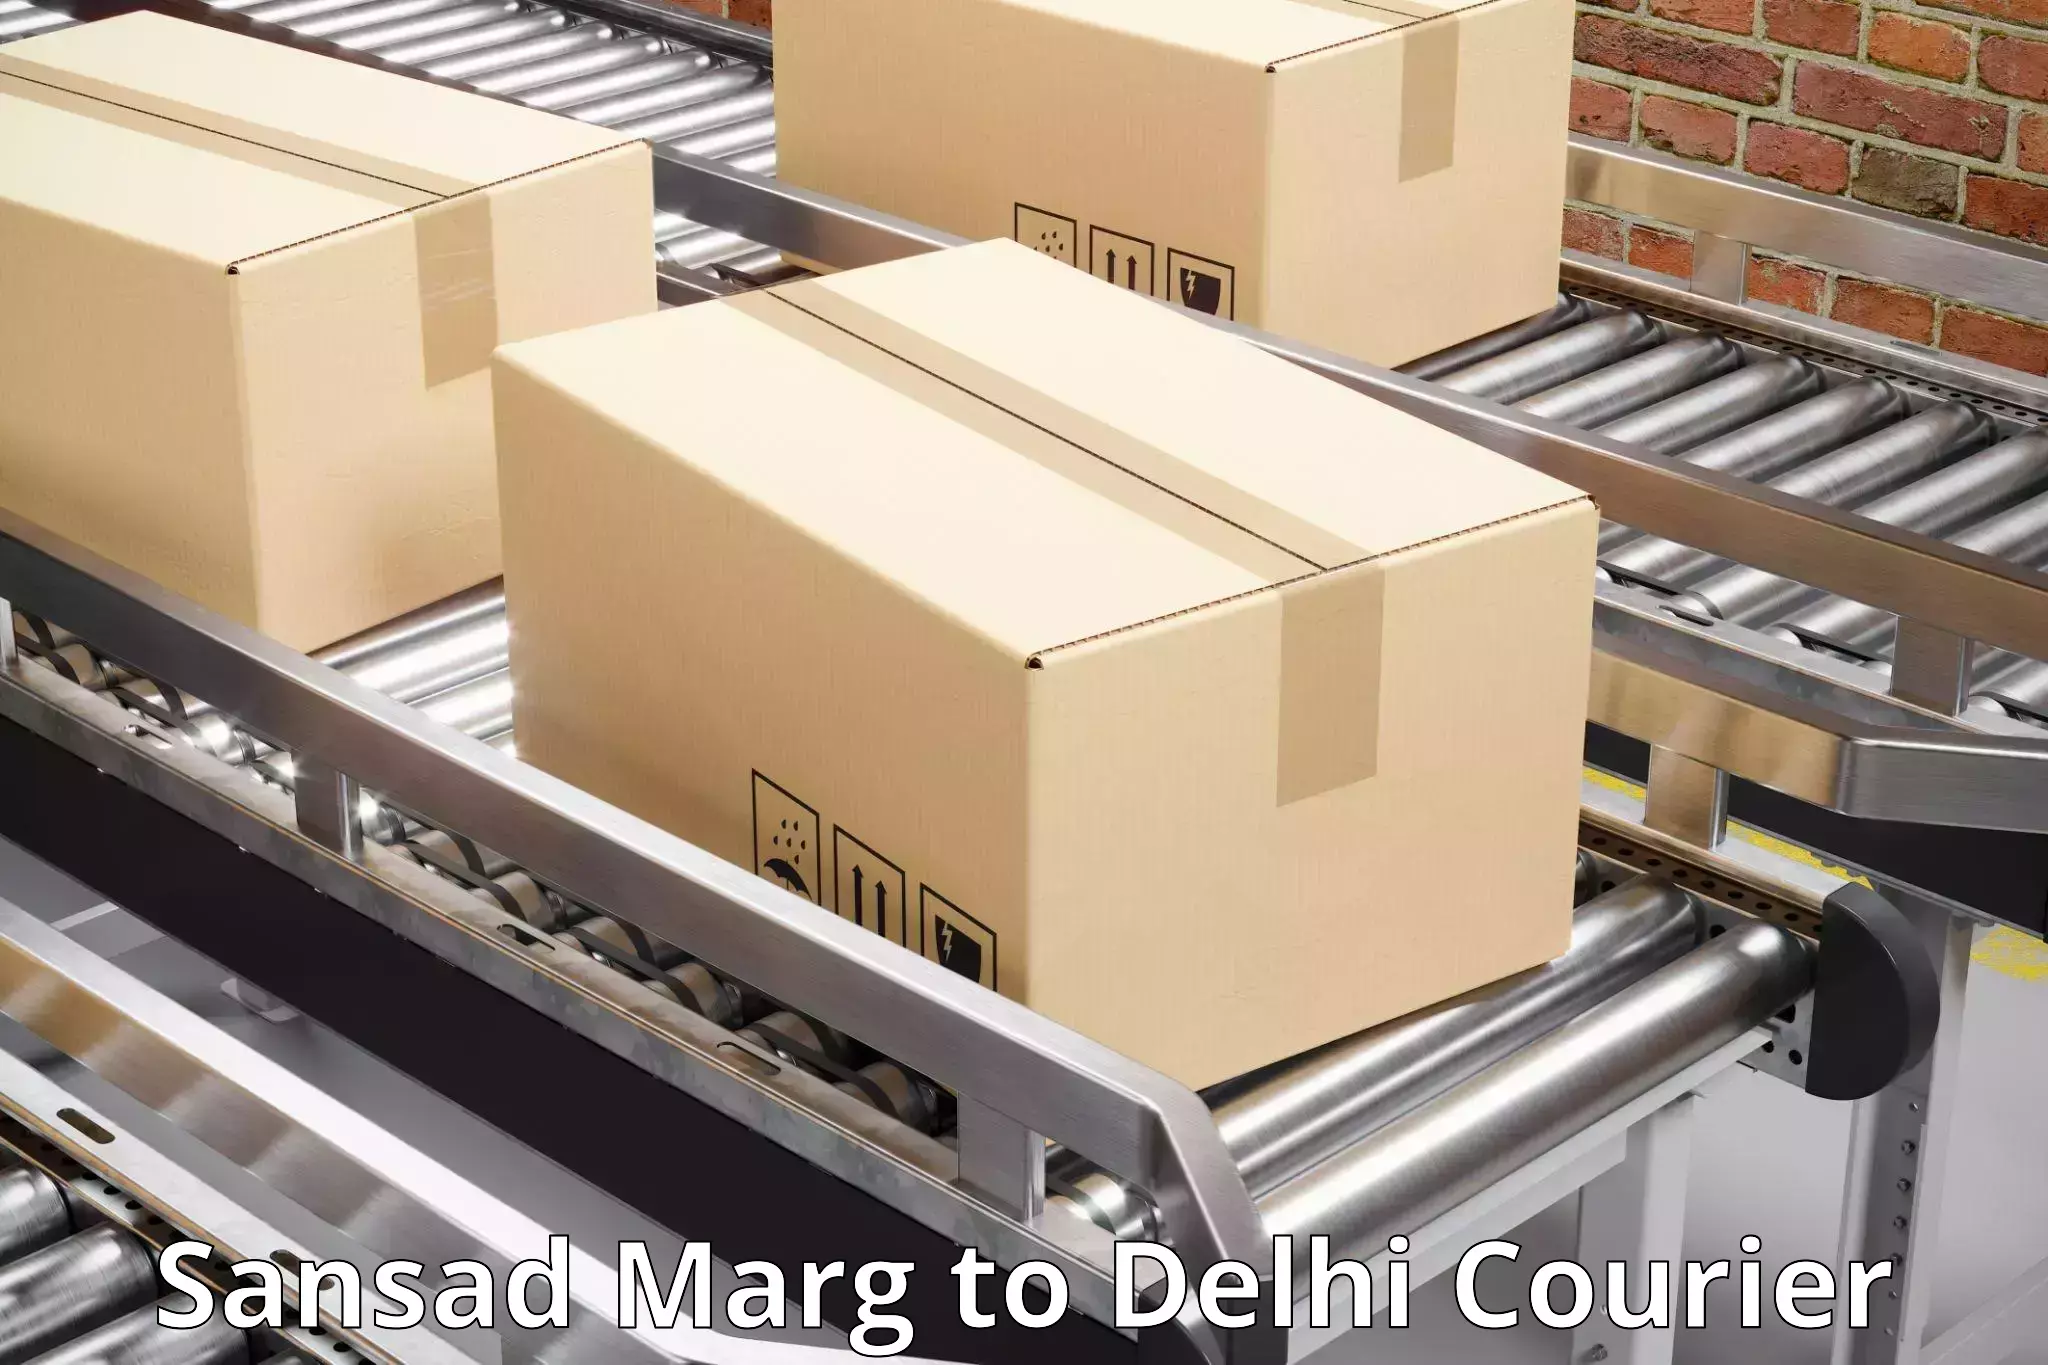 24-hour courier services Sansad Marg to Sansad Marg